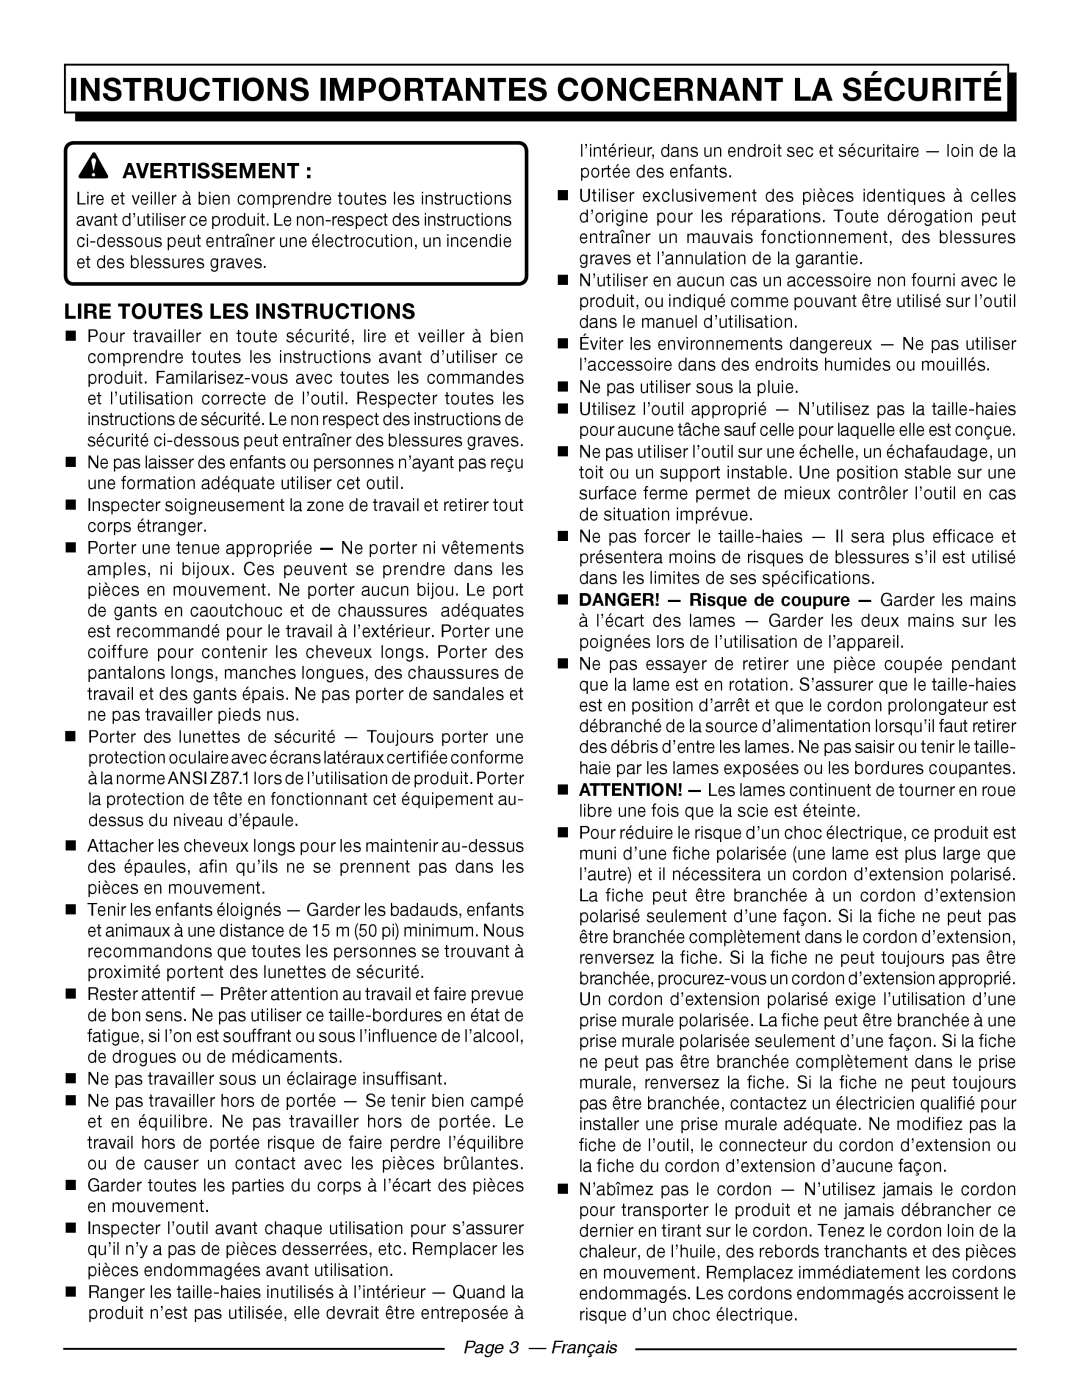 Homelite UT44121 Instructions Importantes Concernant La Sécurité, Avertissement , Lire Toutes Les Instructions 